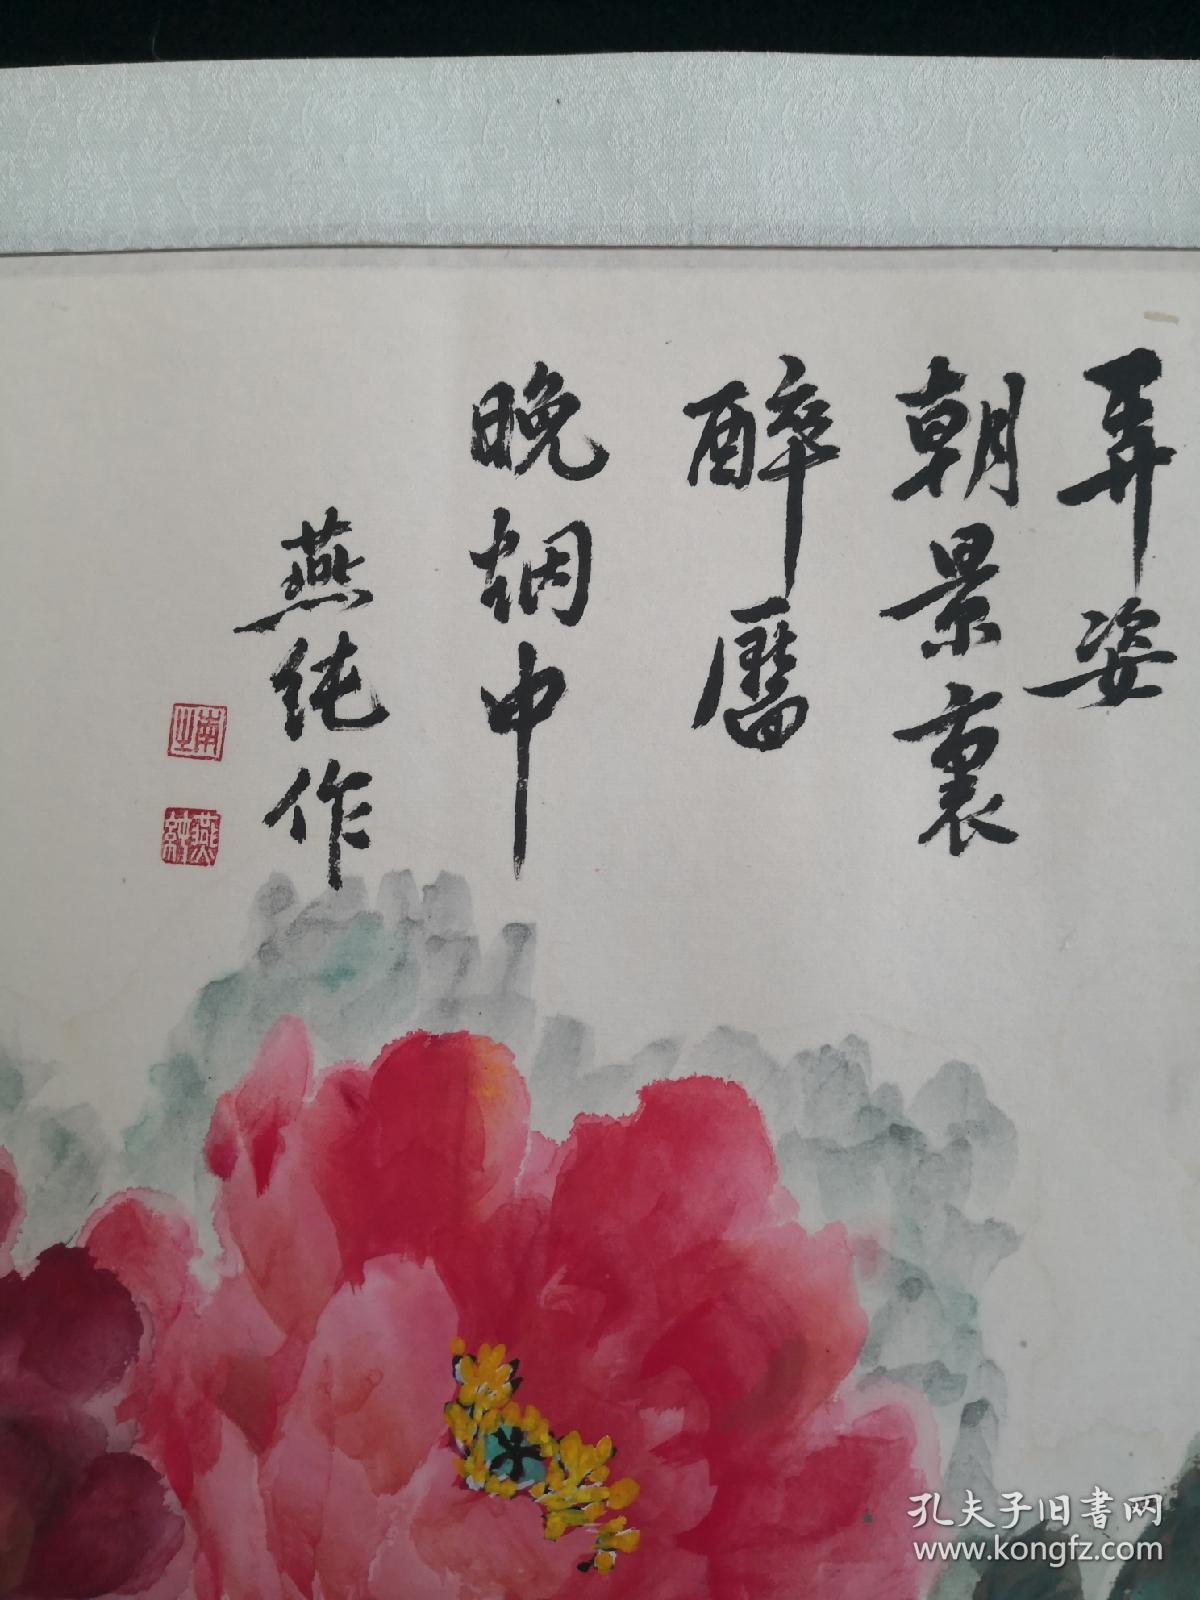 AP12-01-49北京画院专业画家国家一级美术师书法58*47厘米